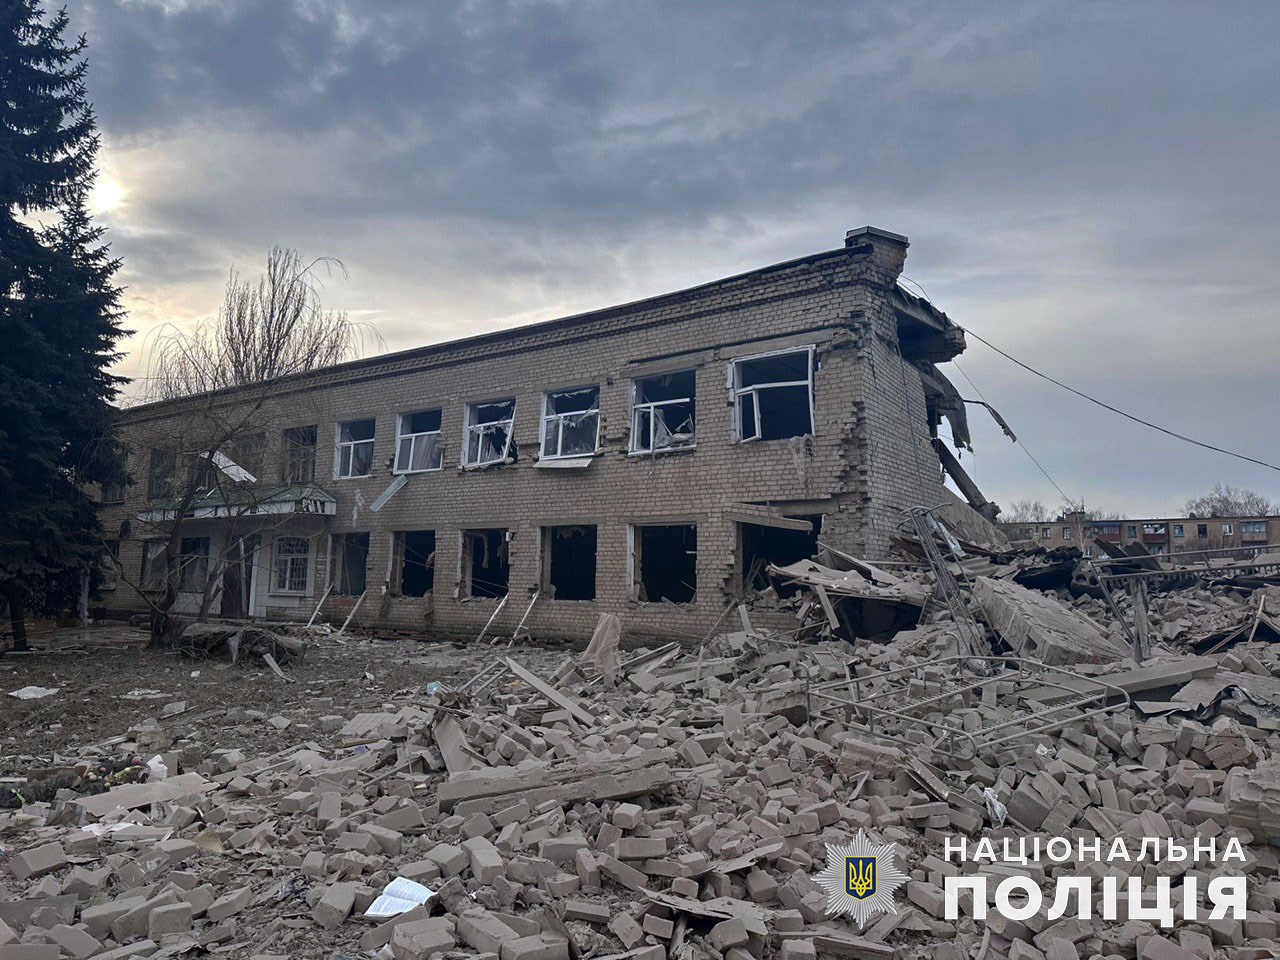 4 жители области погибли и столько же получили ранения: за сутки россияне обстреляли 32 города и села Донетчины 5